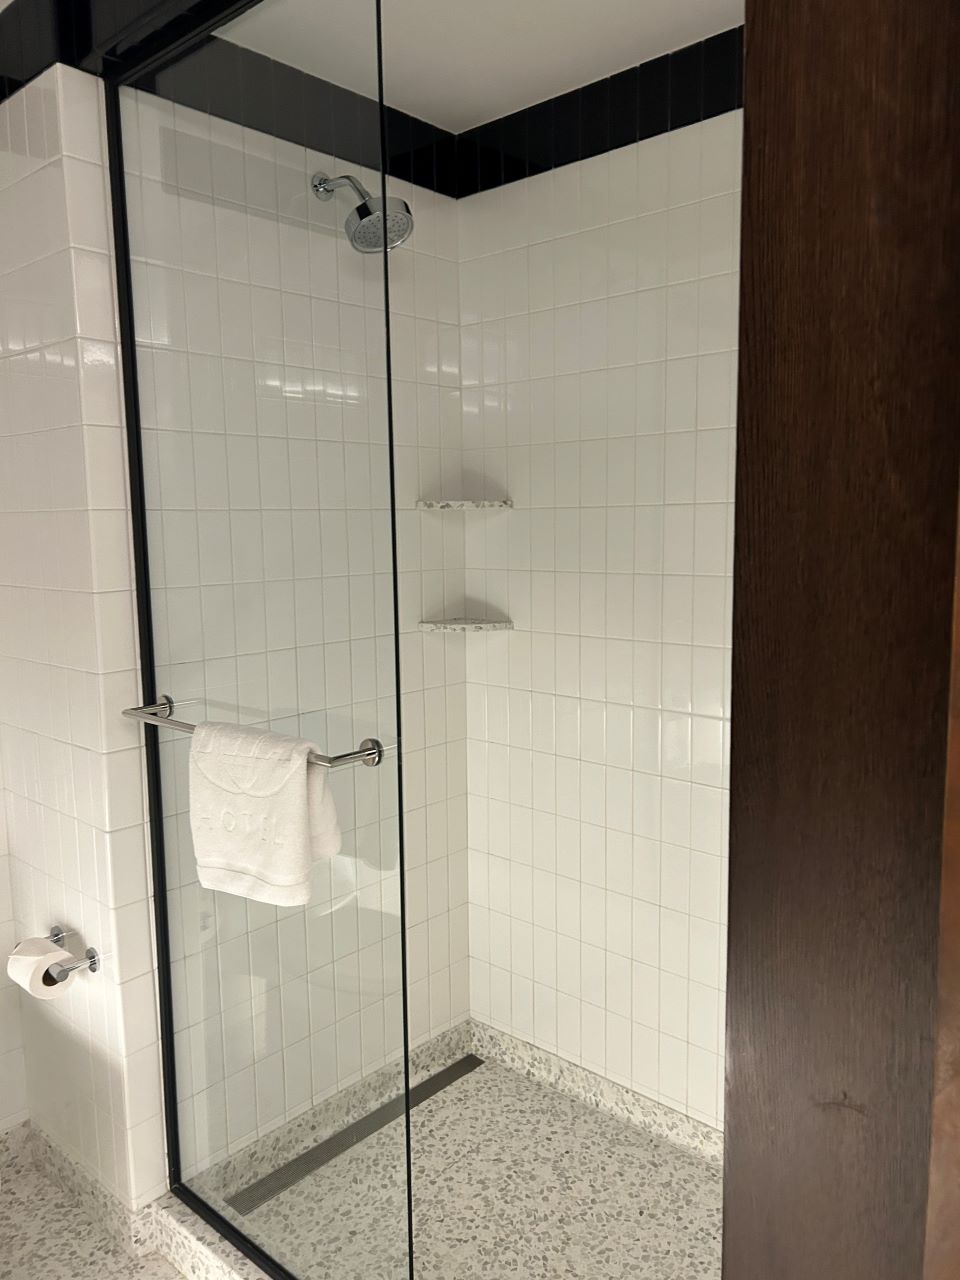 TWA Hotel JFK Shower Room